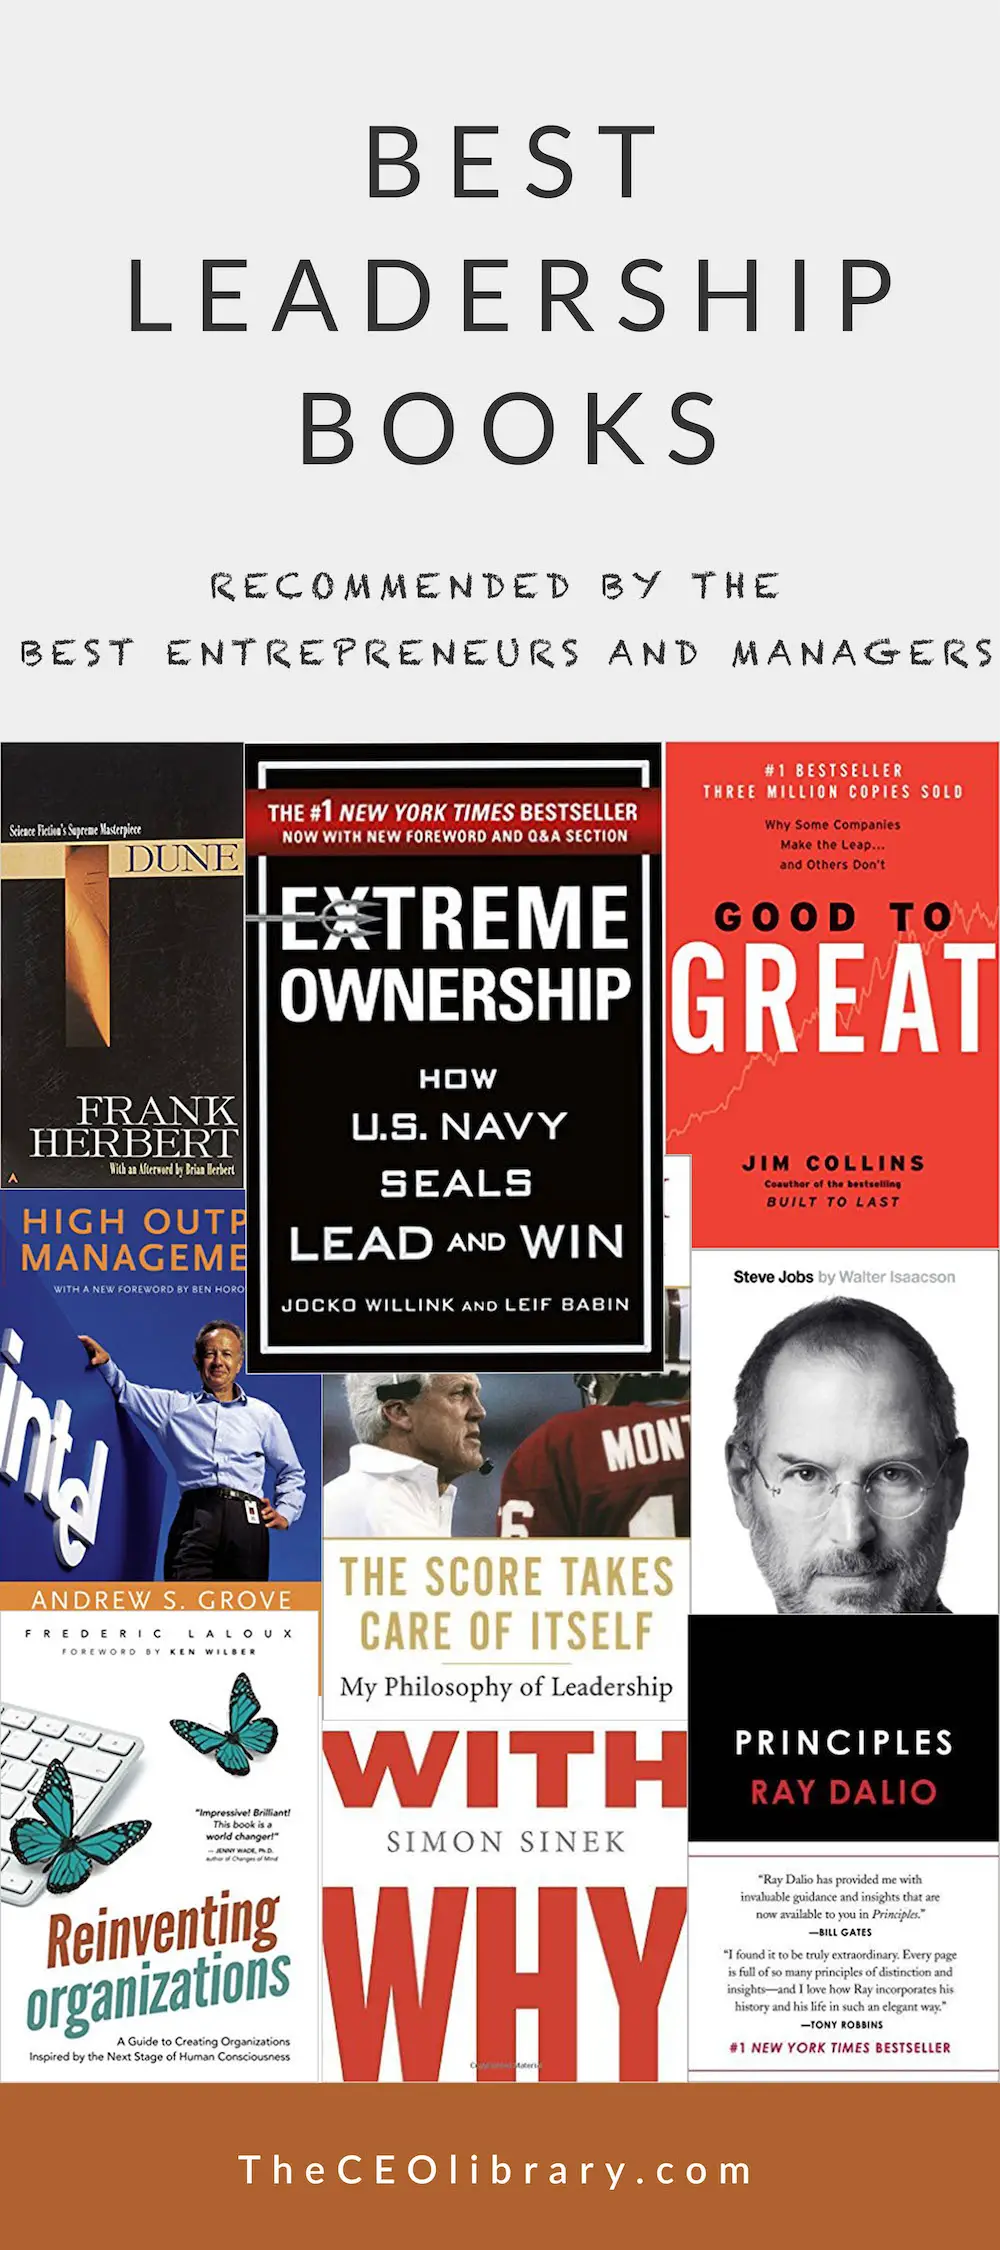 Best Leadership Books - empfohlen von den besten Unternehmern und Managern